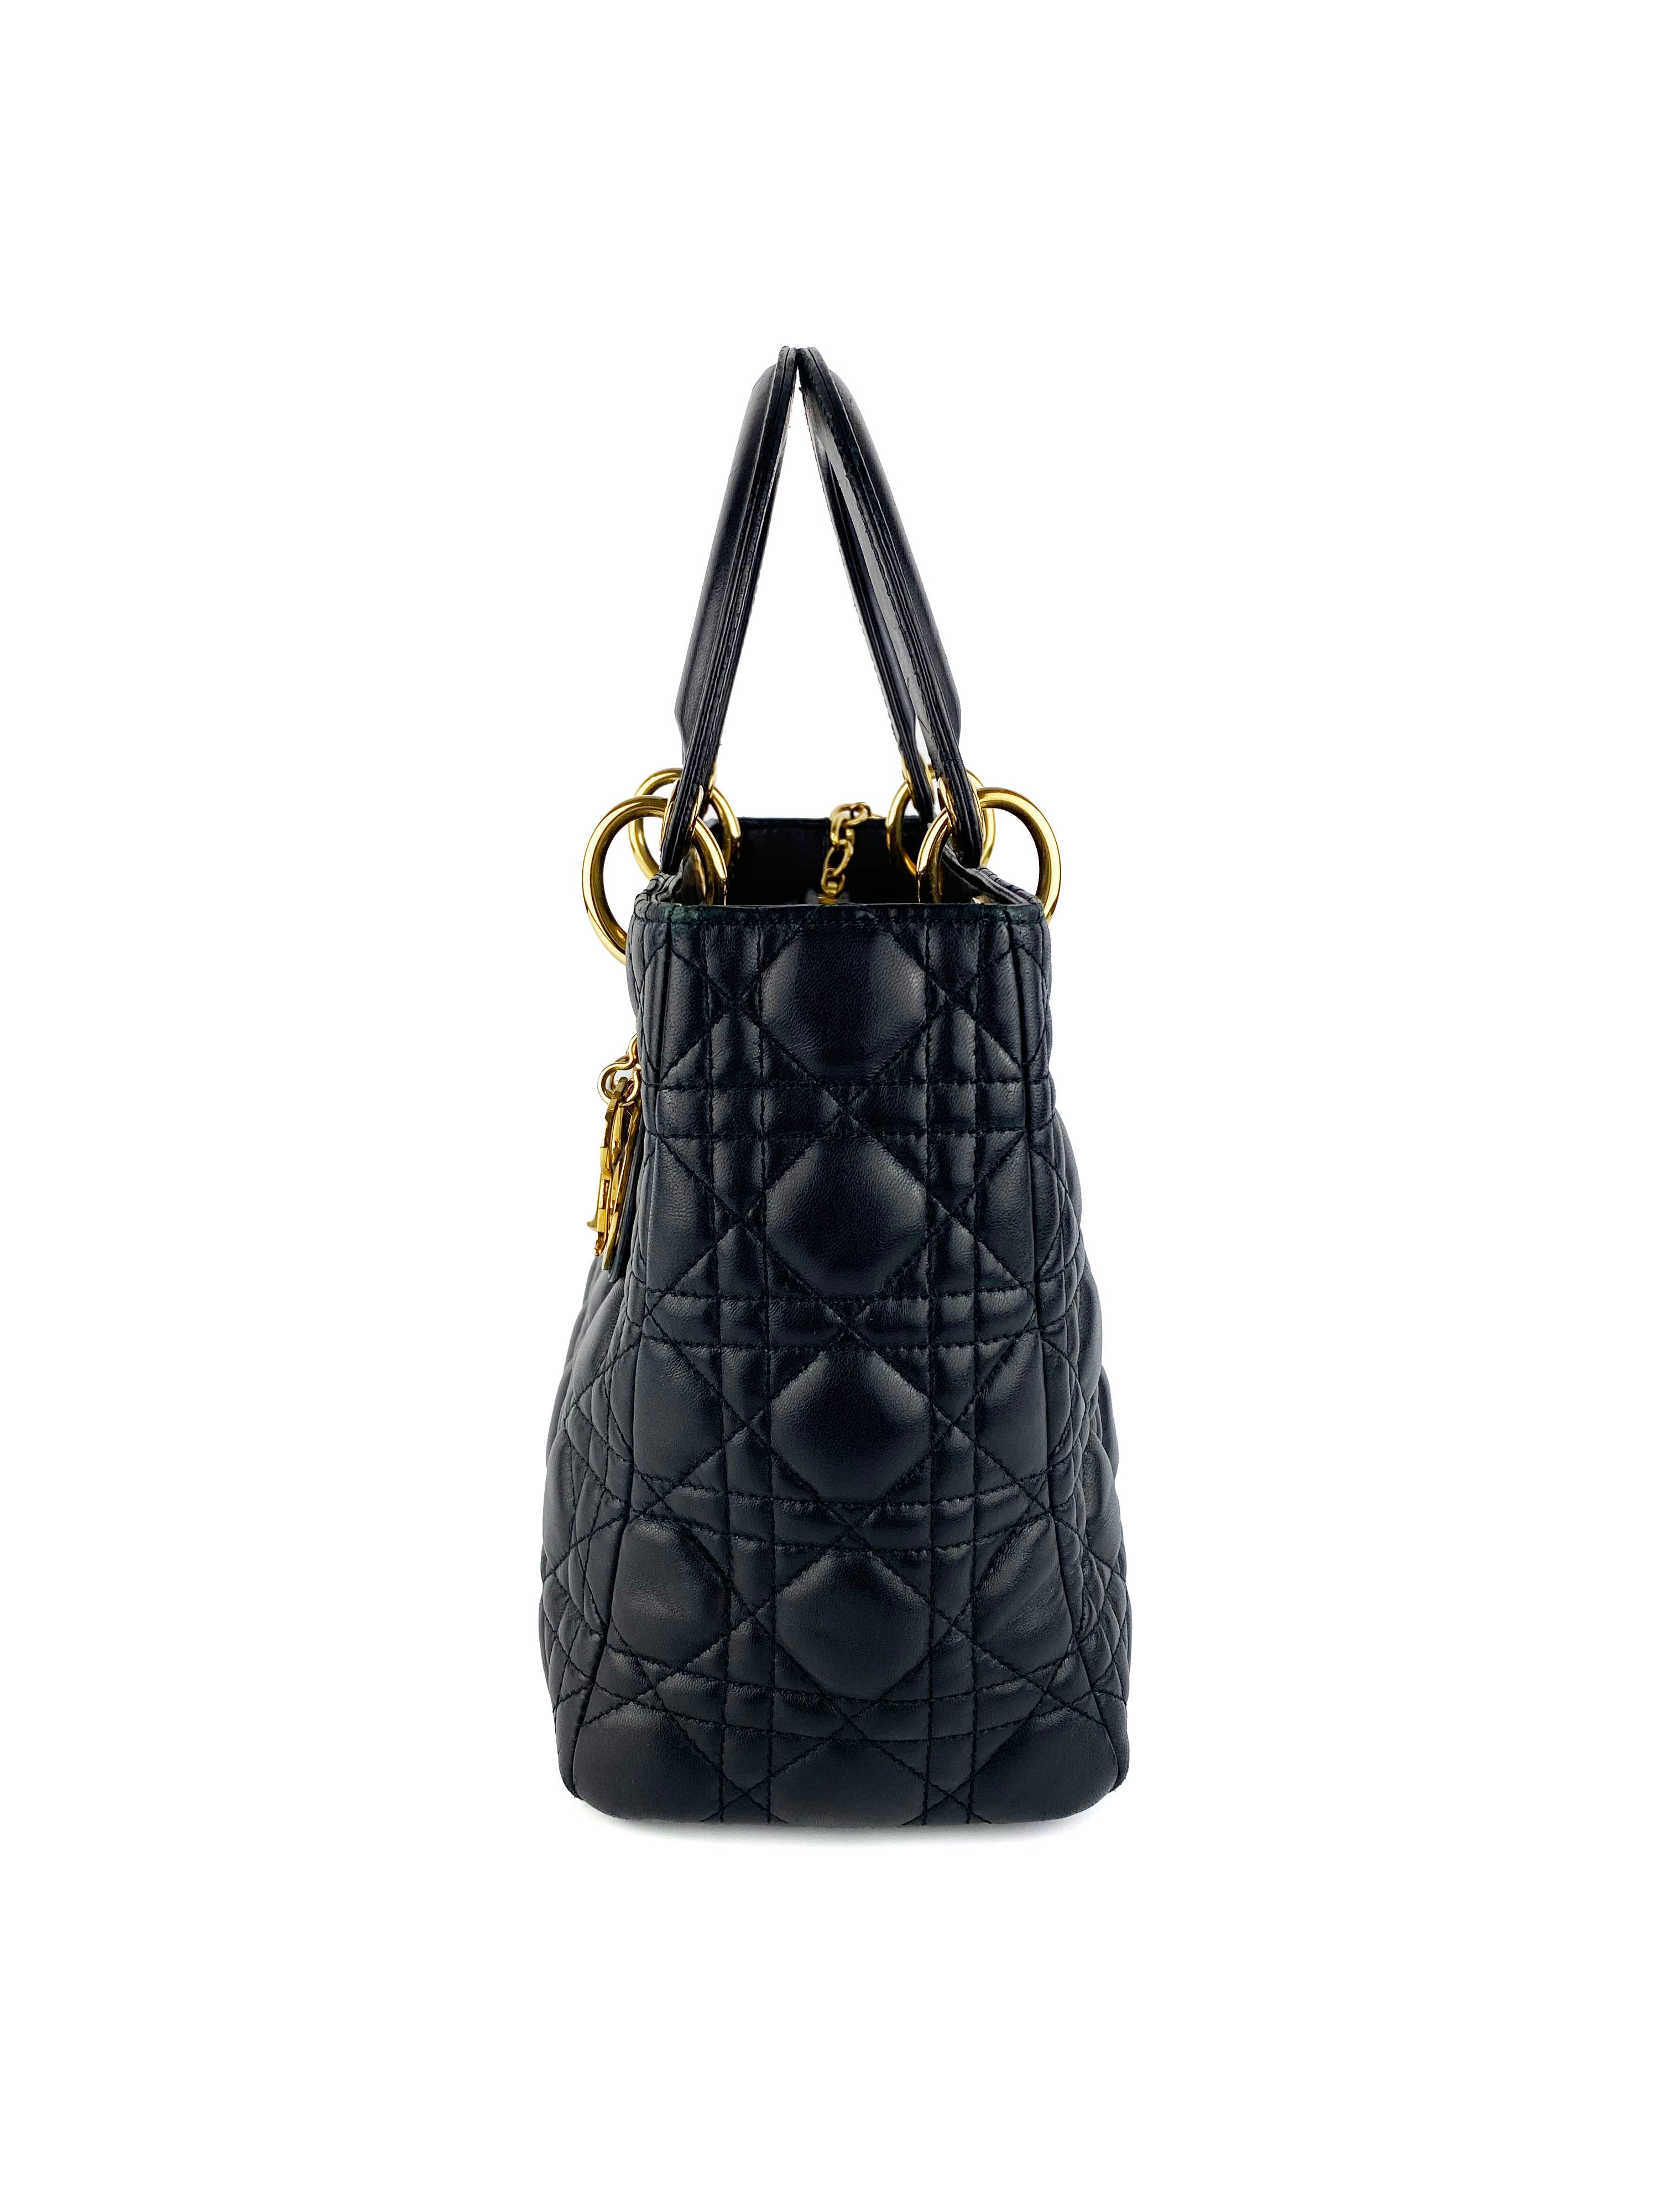 Dior Medium Lady Dior Black Bag